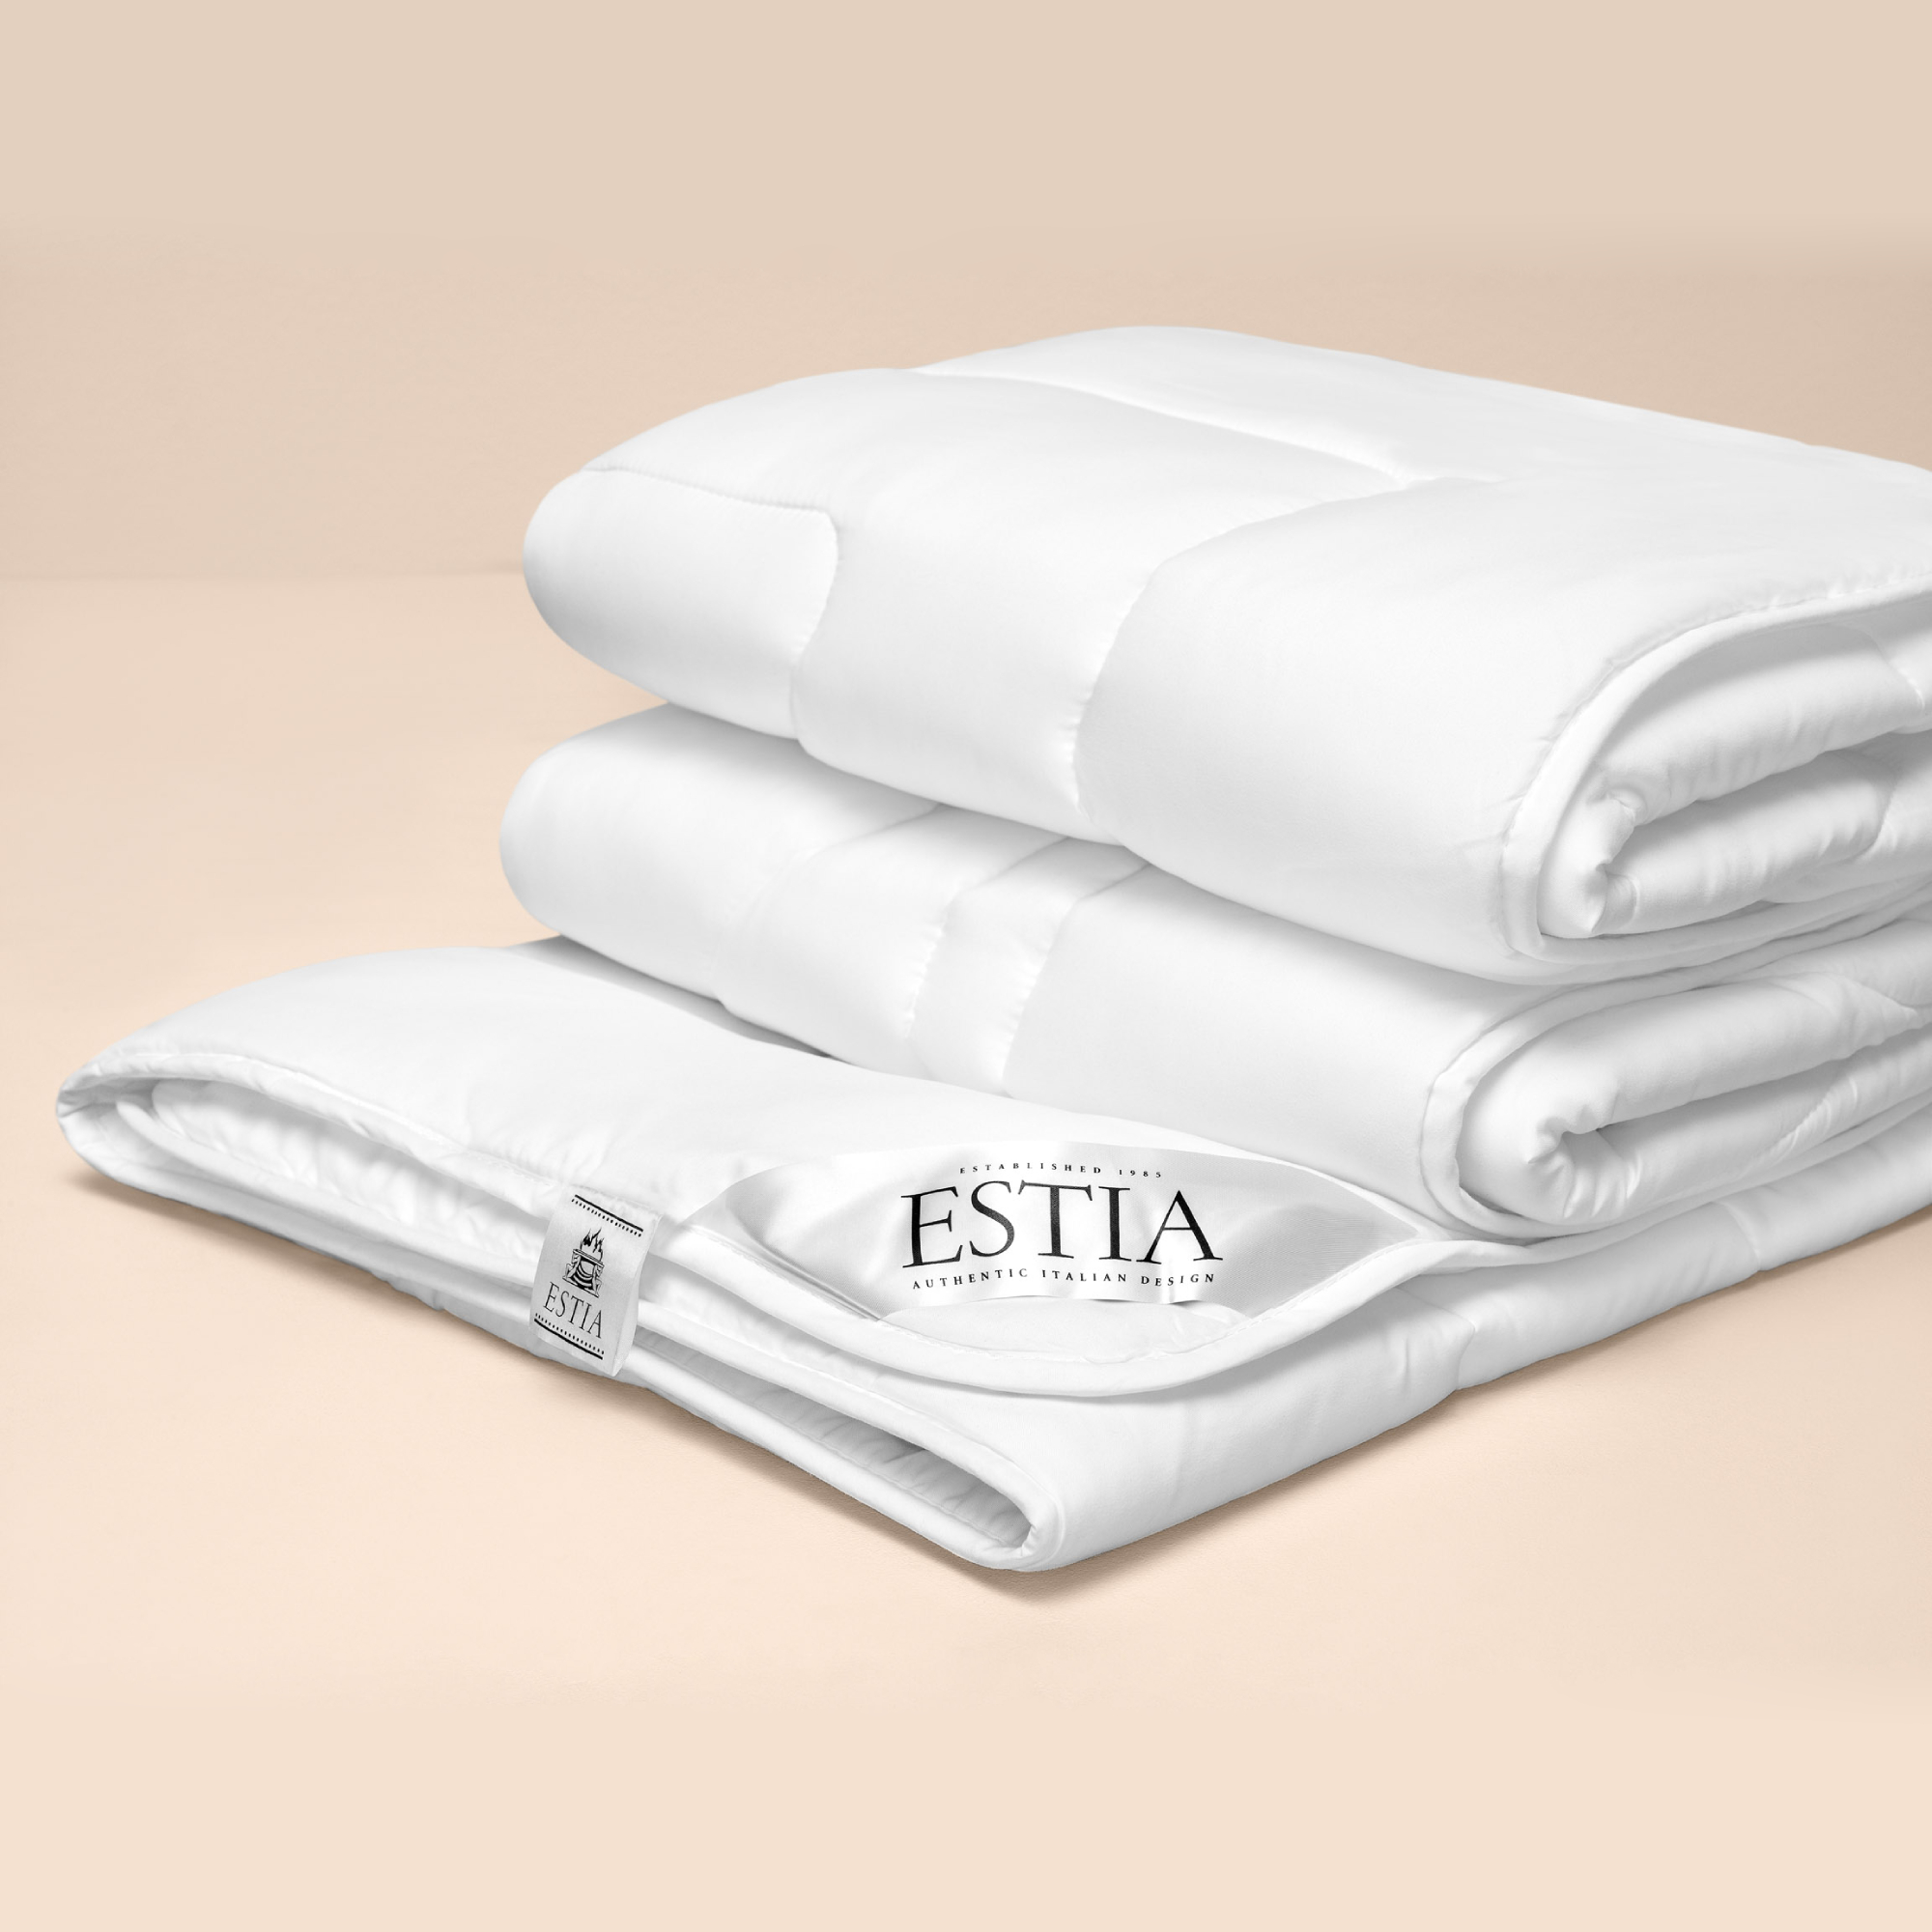 Одеяло Estia Селеста Премиум 200х210 см одеяло estia аоста лайт 200x210 белое